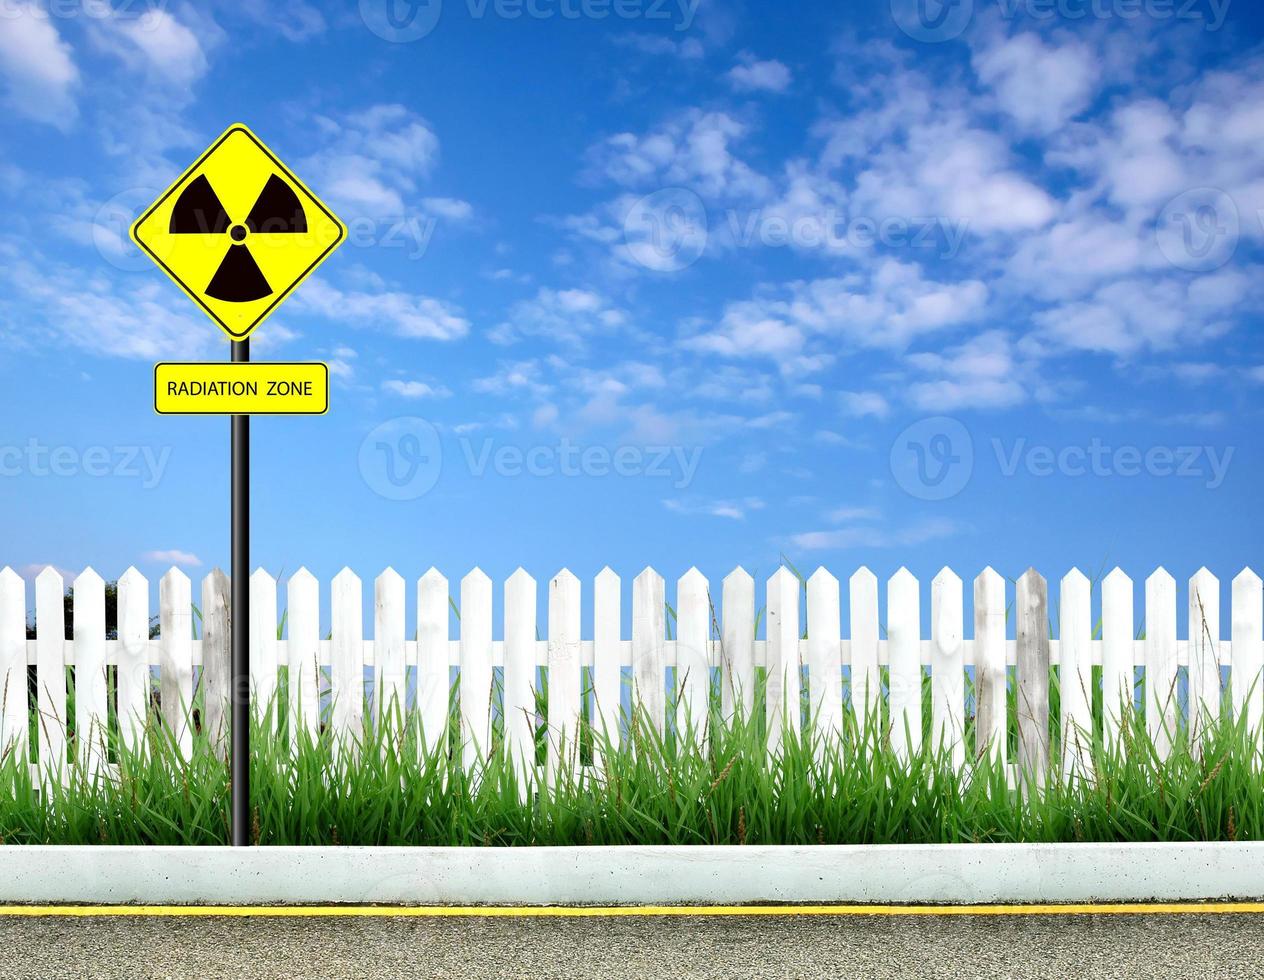 stralingswaarschuwingssymbool foto